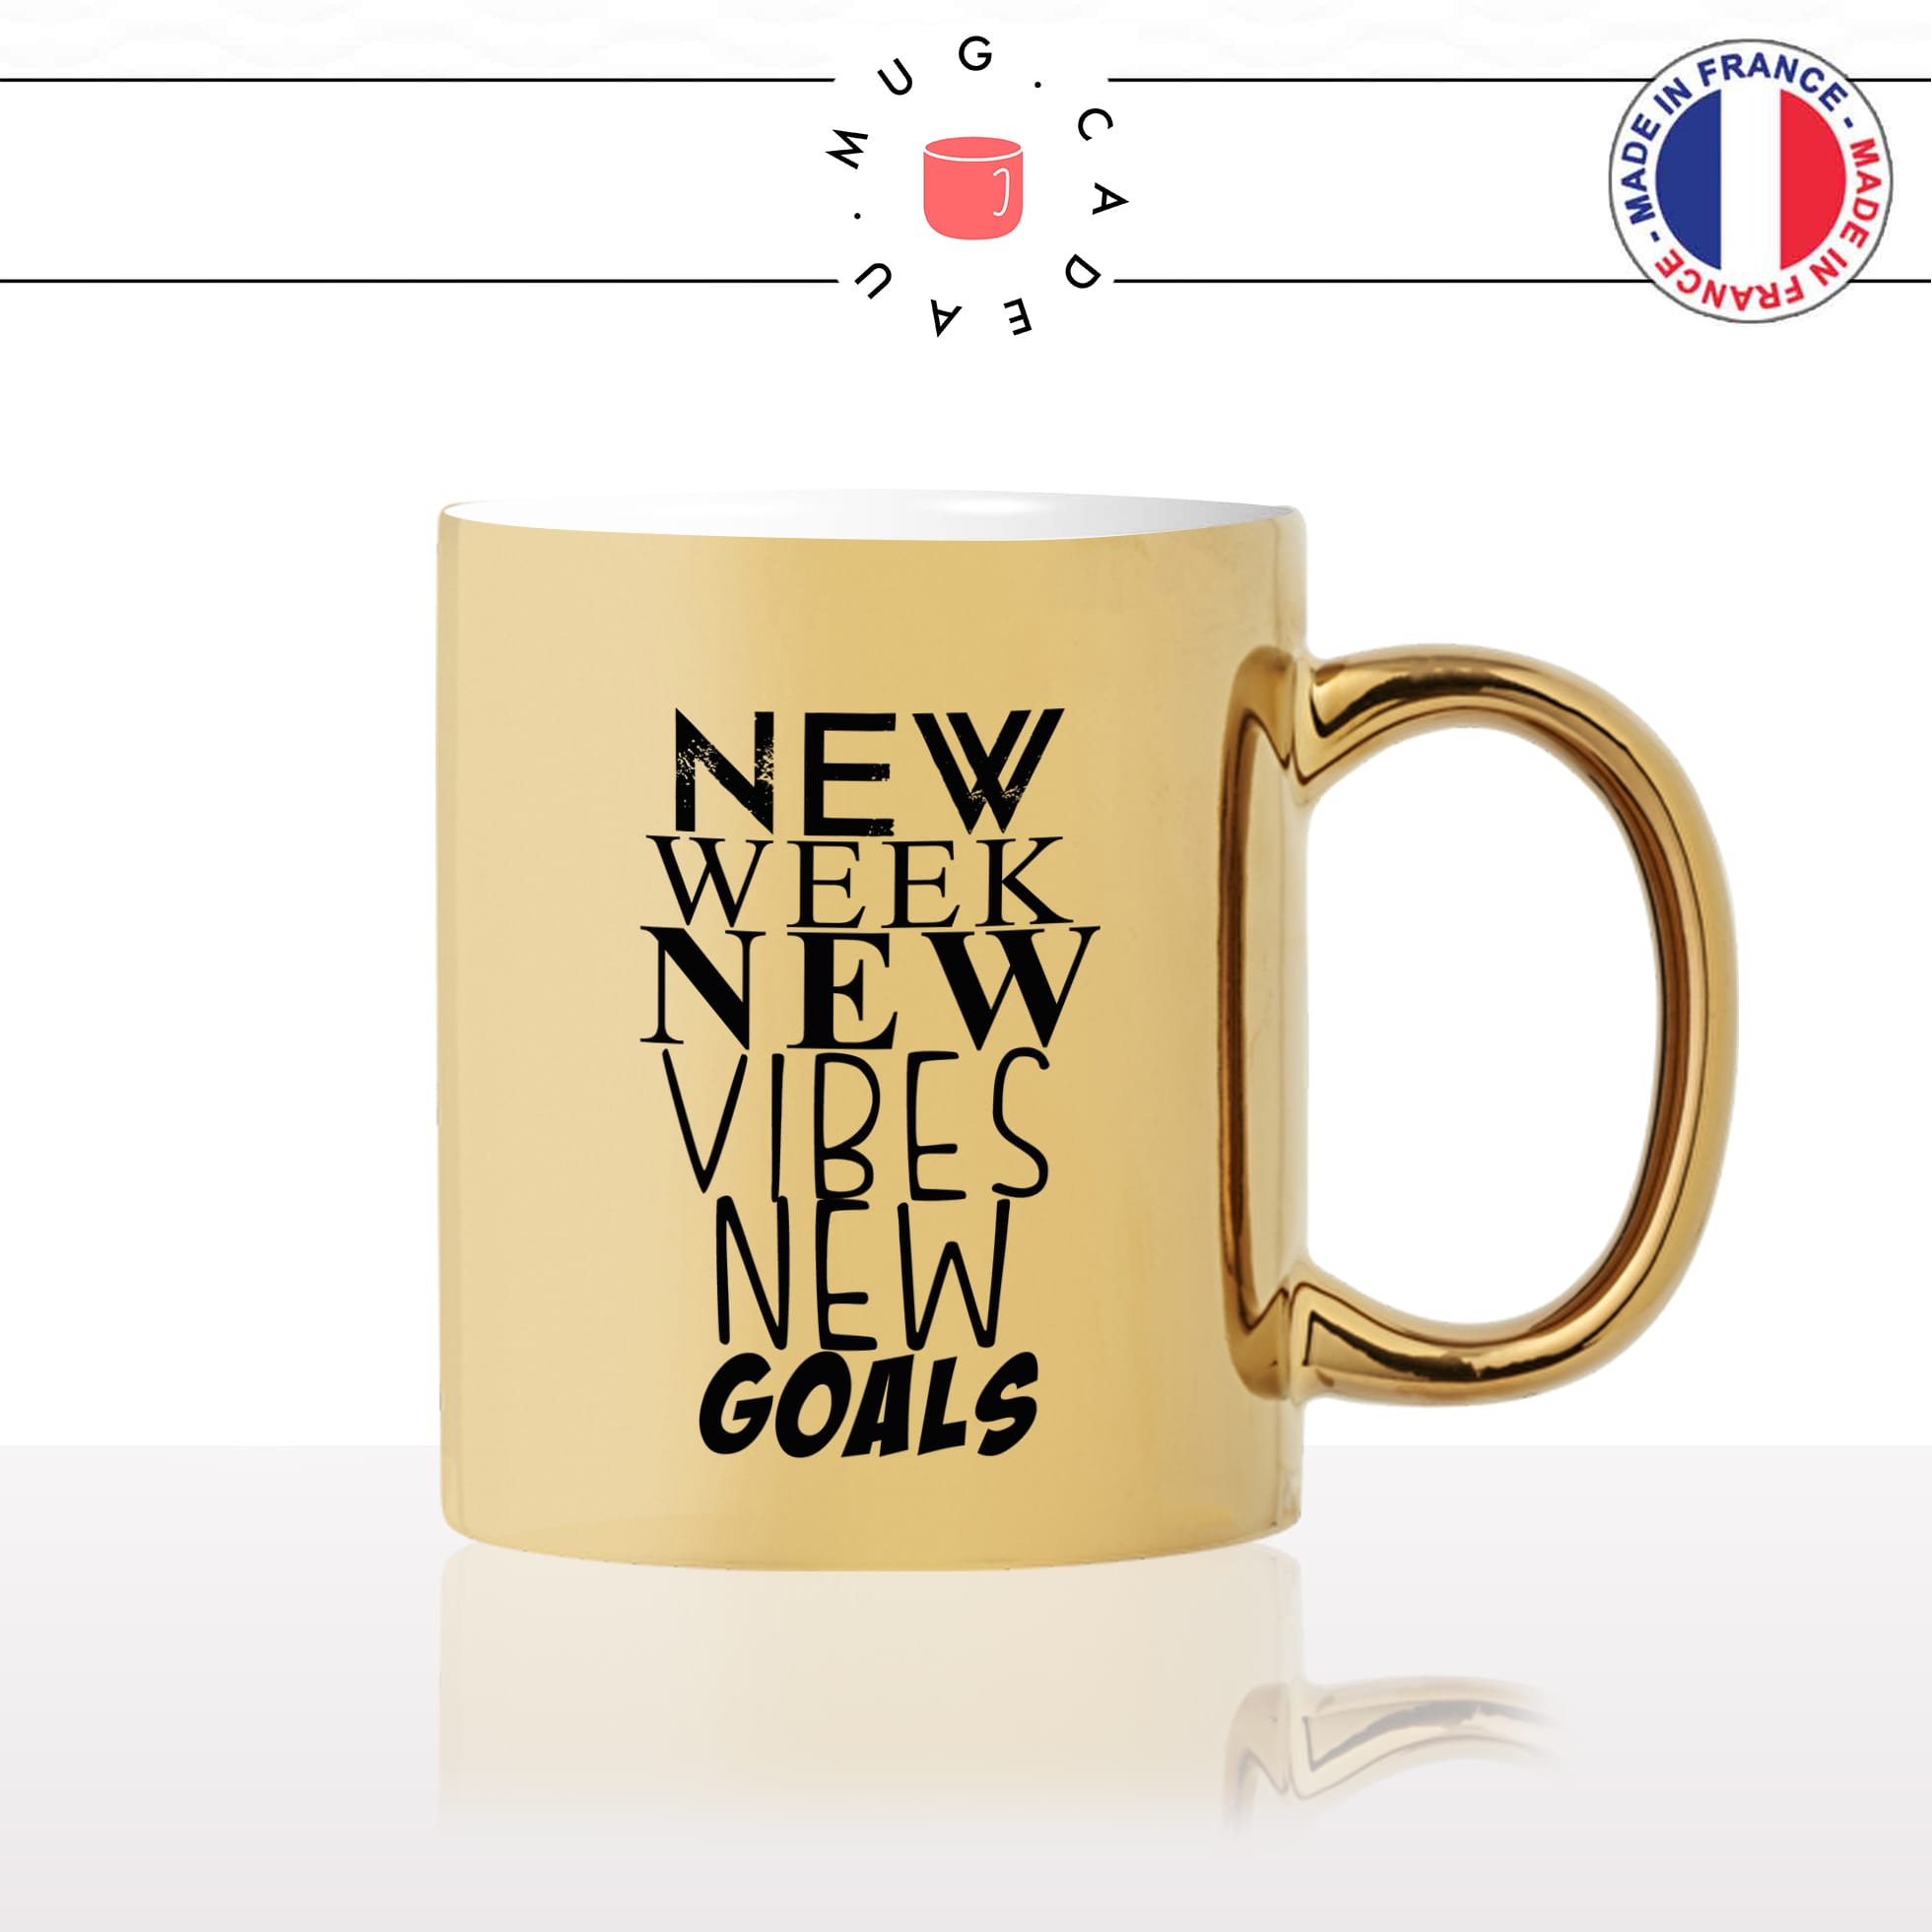 mug-tasse-doré-or-gold-new-week-vibes-goals-citation-phrase-dicton-humour-fun-idée-cadeau-personnalisé-café-thé2-min